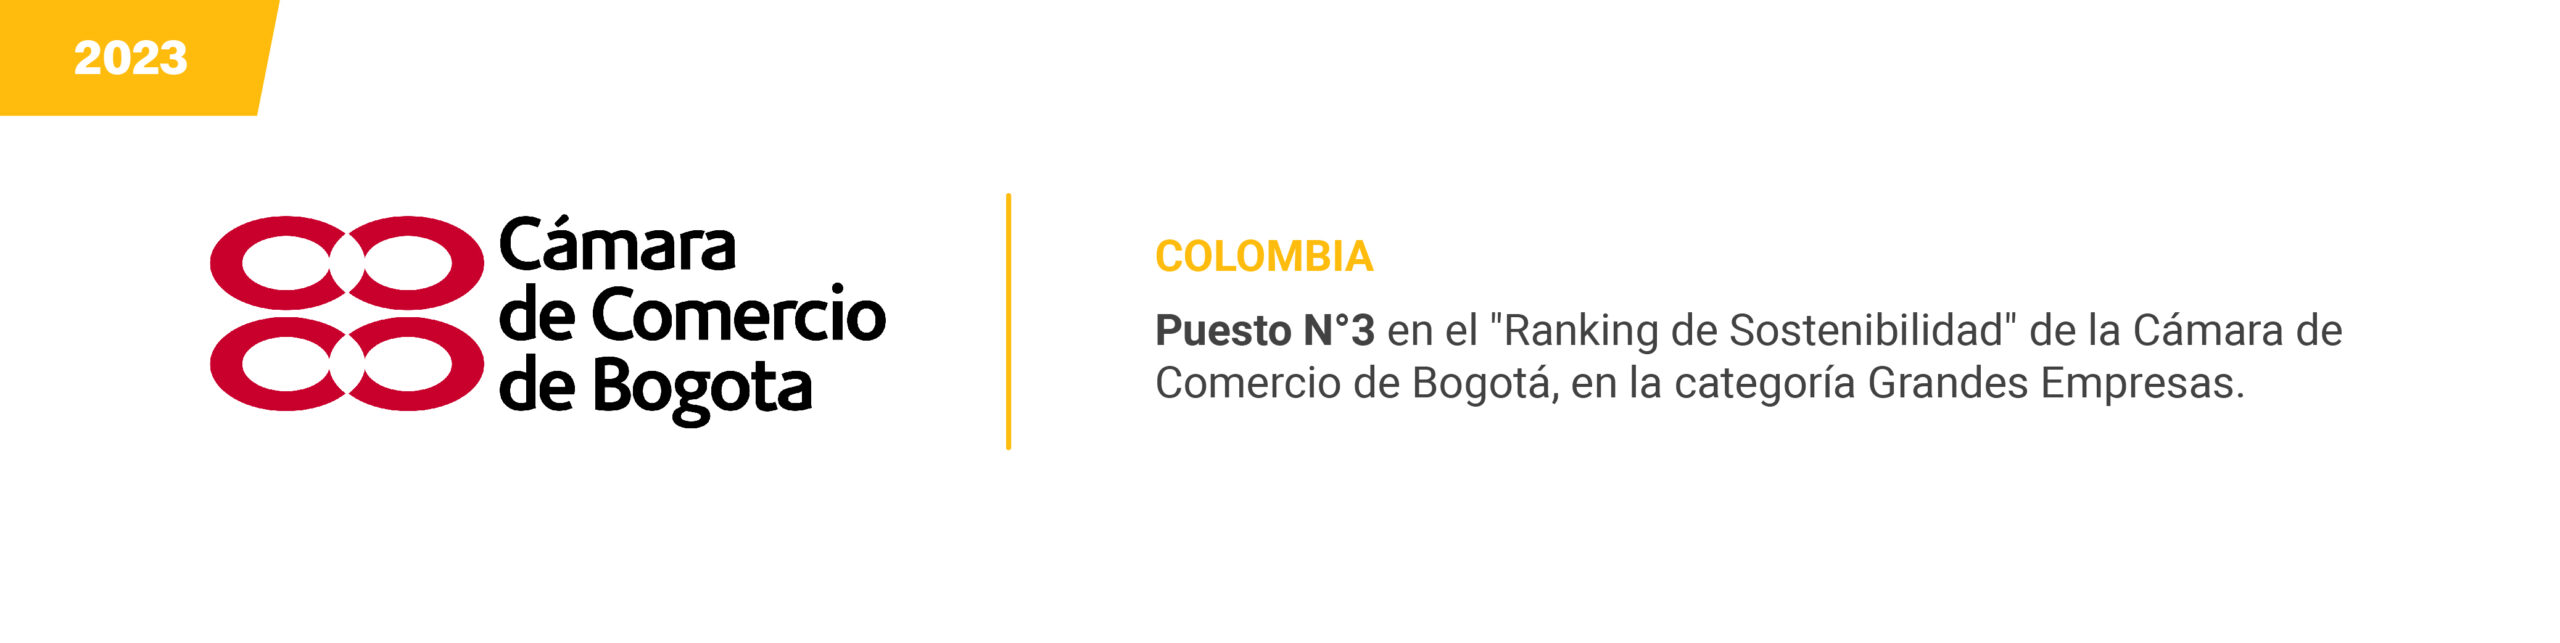 Camara de Comercio de Bogota